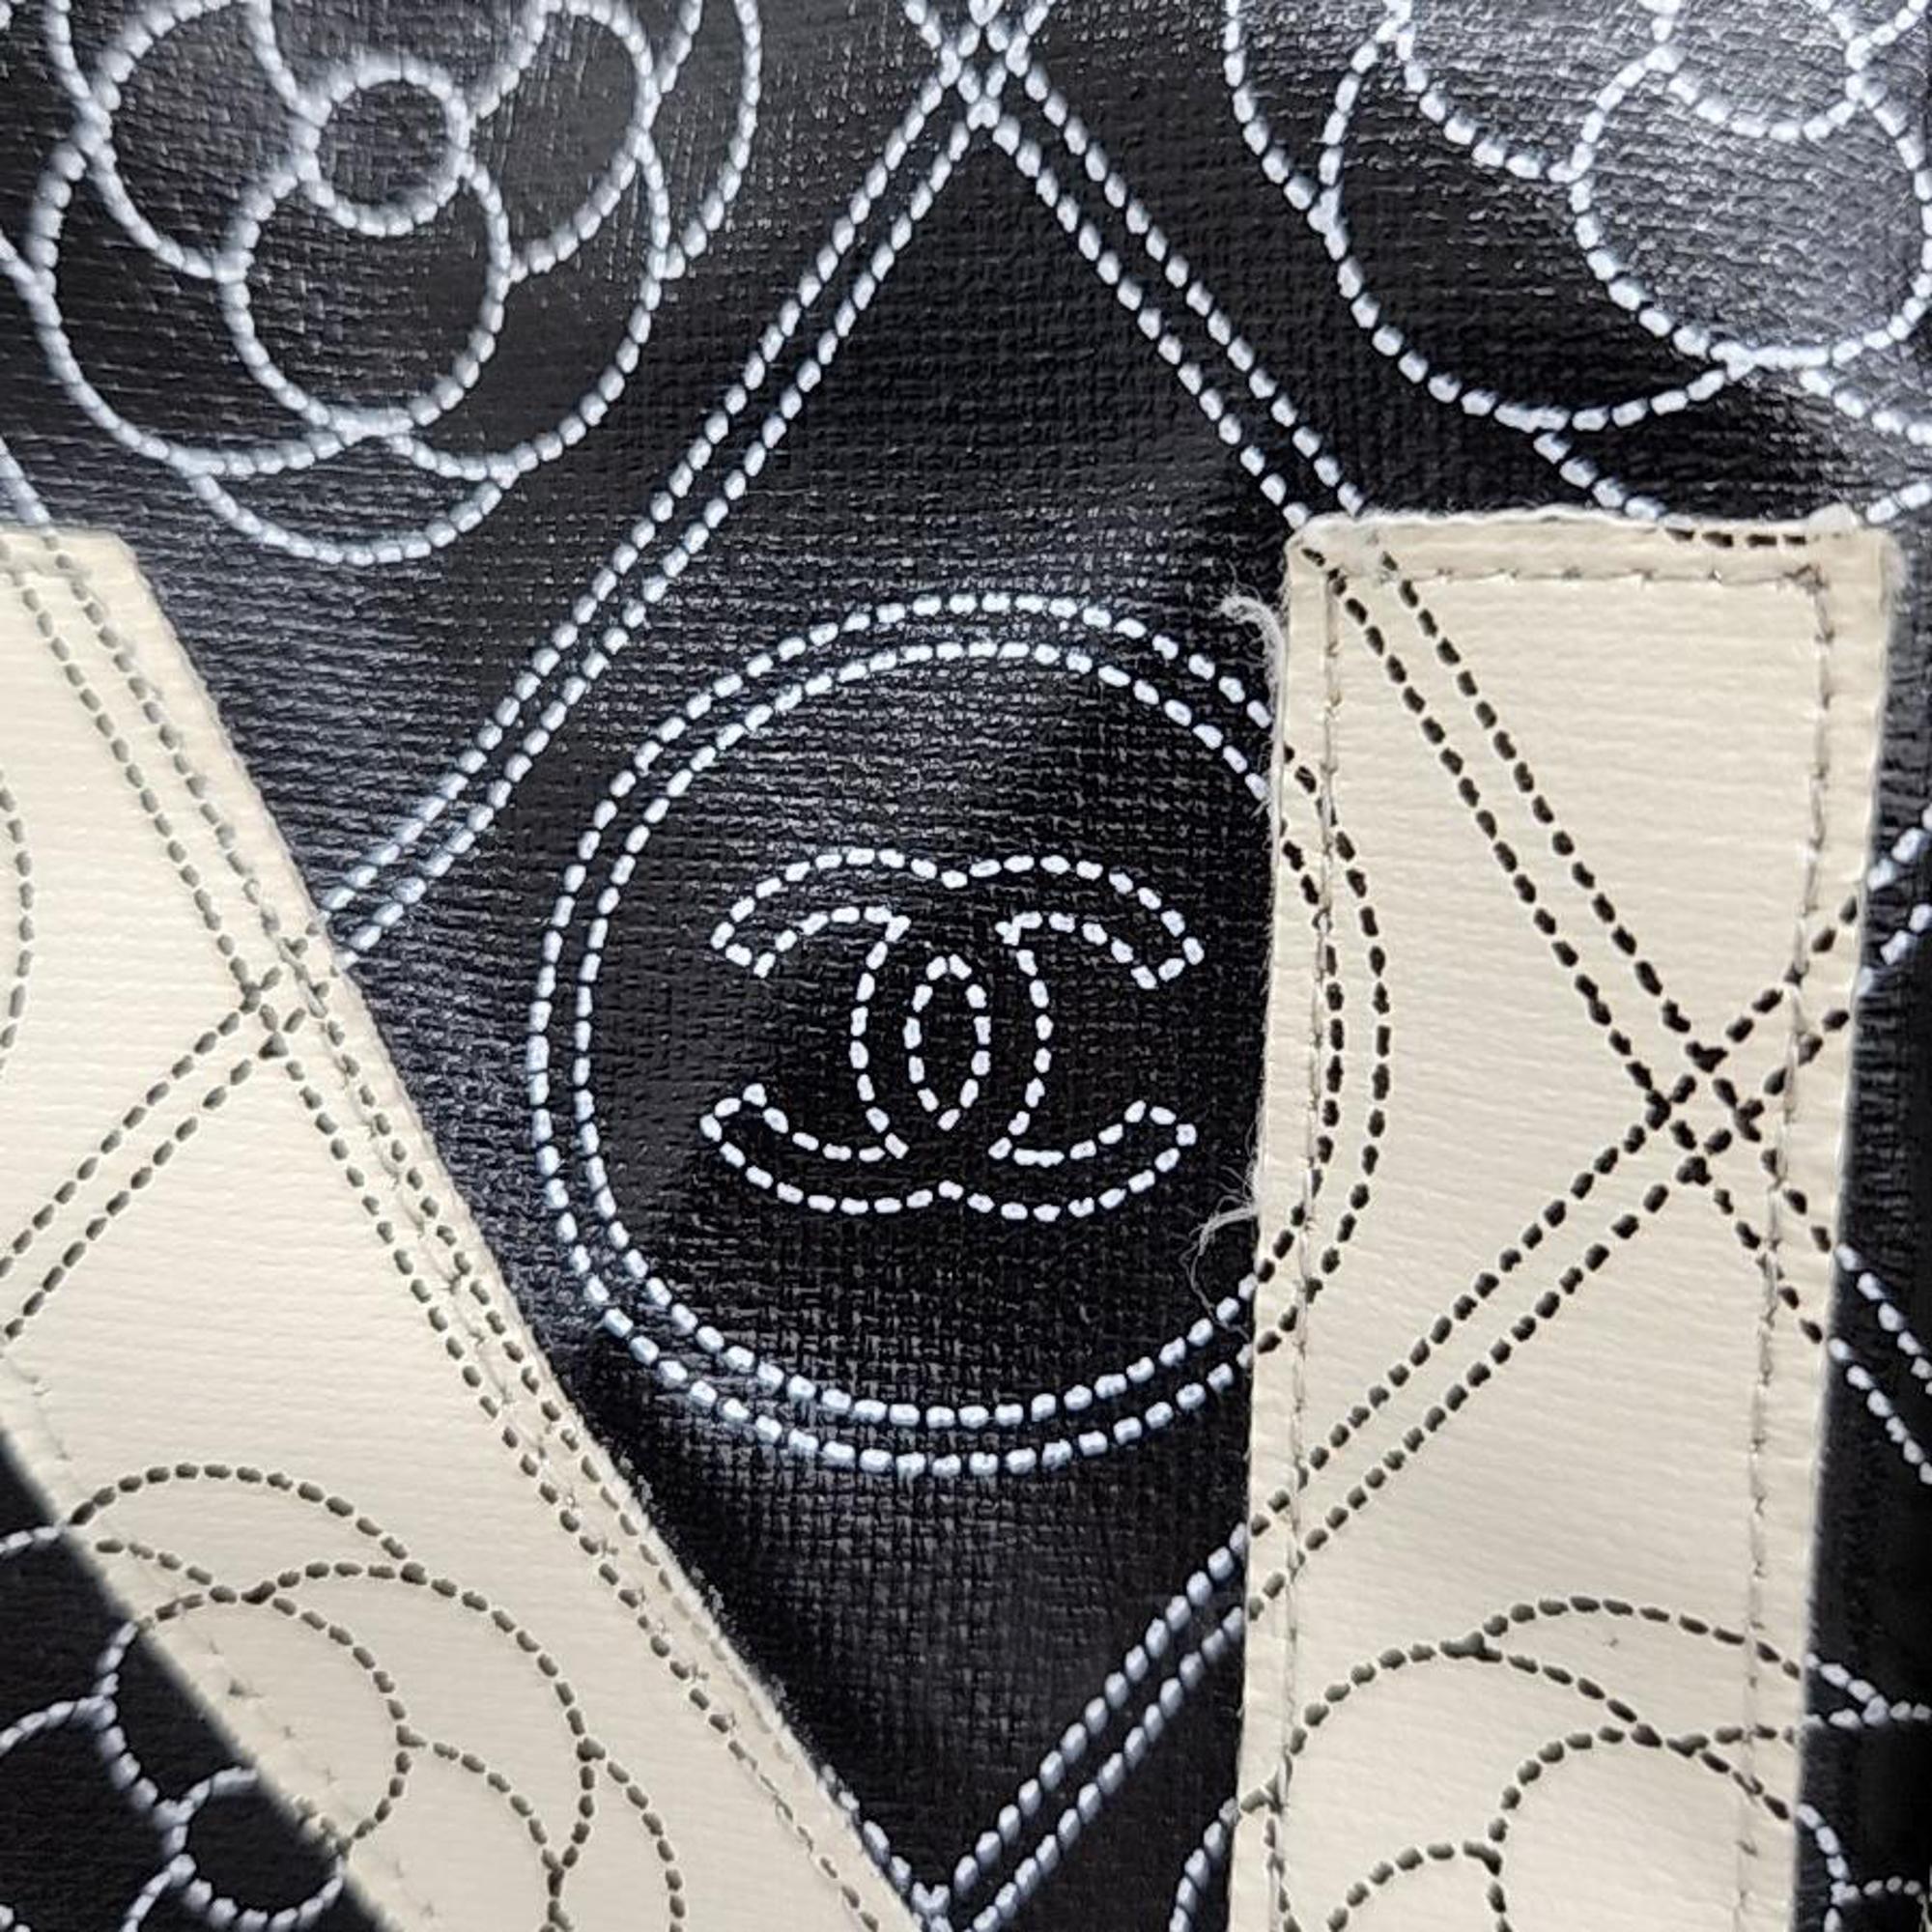 Chanel Black Leather Maxi Camellia Shoulder Bag